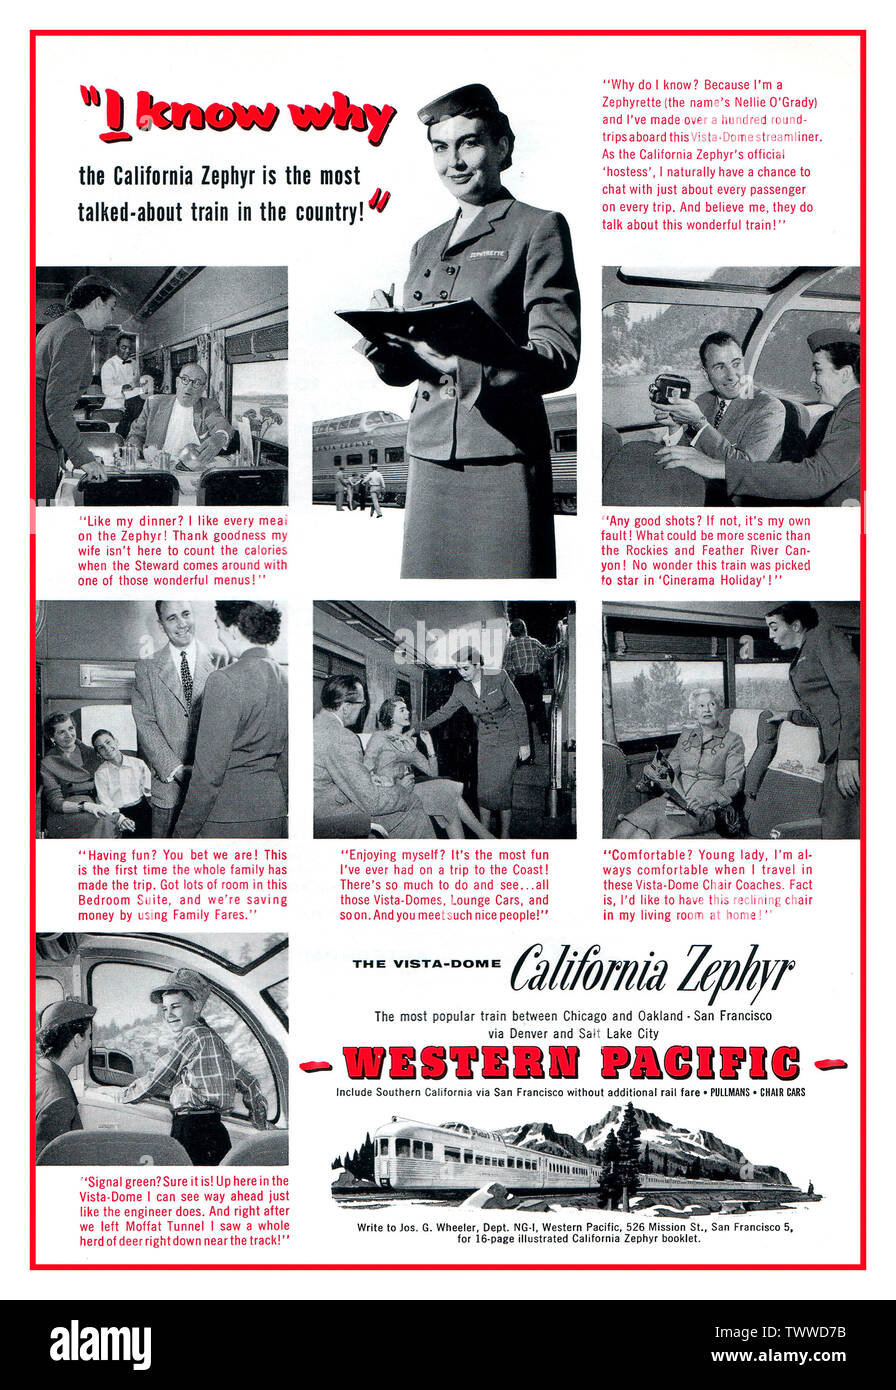 California Zephyr 1950er Jahre Vintage American Rail 1956 Werbung für das kalifornische Zephyr im Westpazifik, mit einer Zephyrette, uniformierten Bahnhostess, die mit einer Vielzahl von Passagieren an Bord des Zuges interagiert. Februar 1956 Werbung für die California Zephyr Western Pacific Railroad im Westpazifik Stockfoto